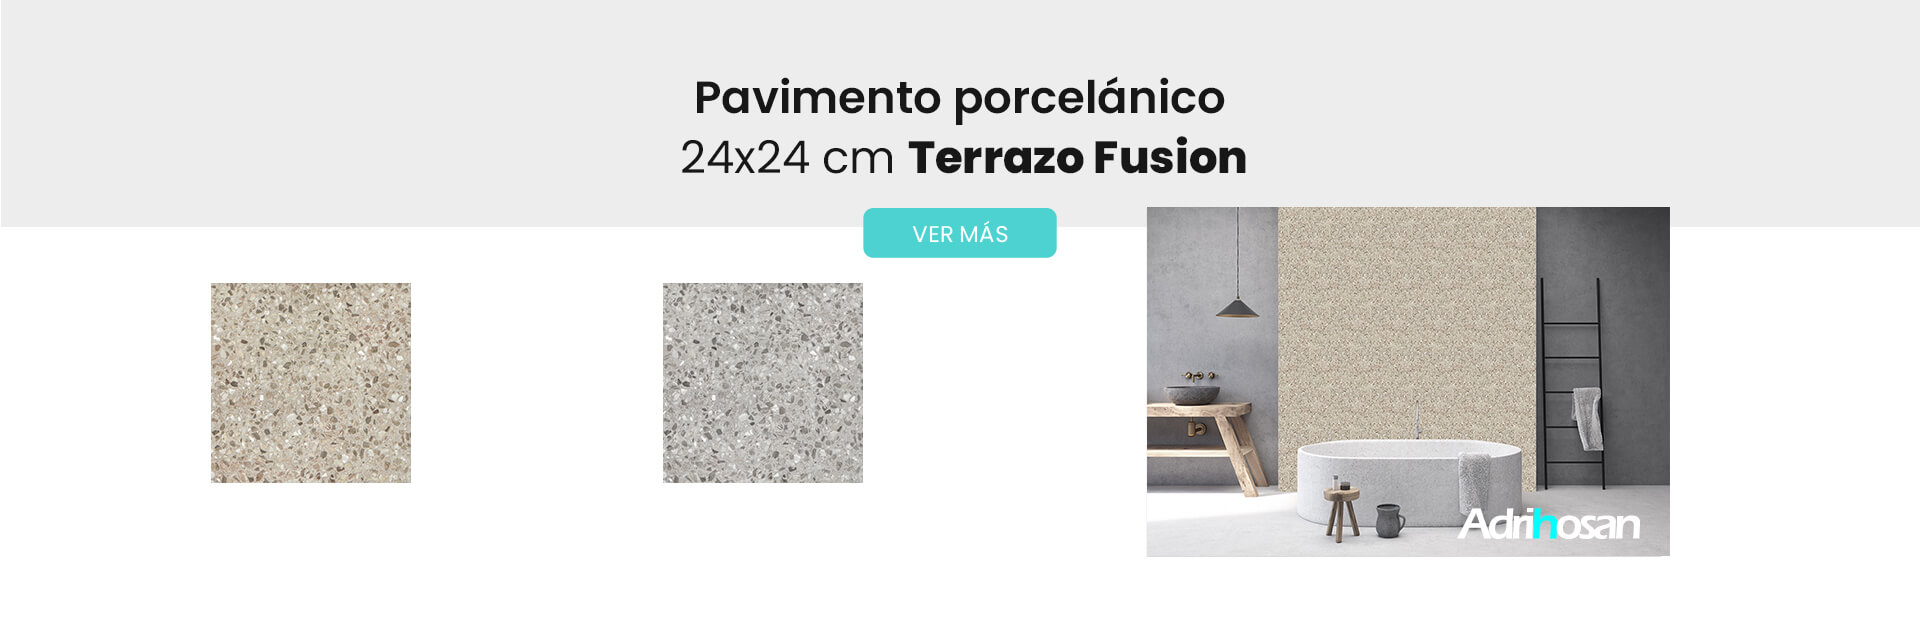 Pavimento imitación Terrazo fusion 24x24 cm Adrihosan